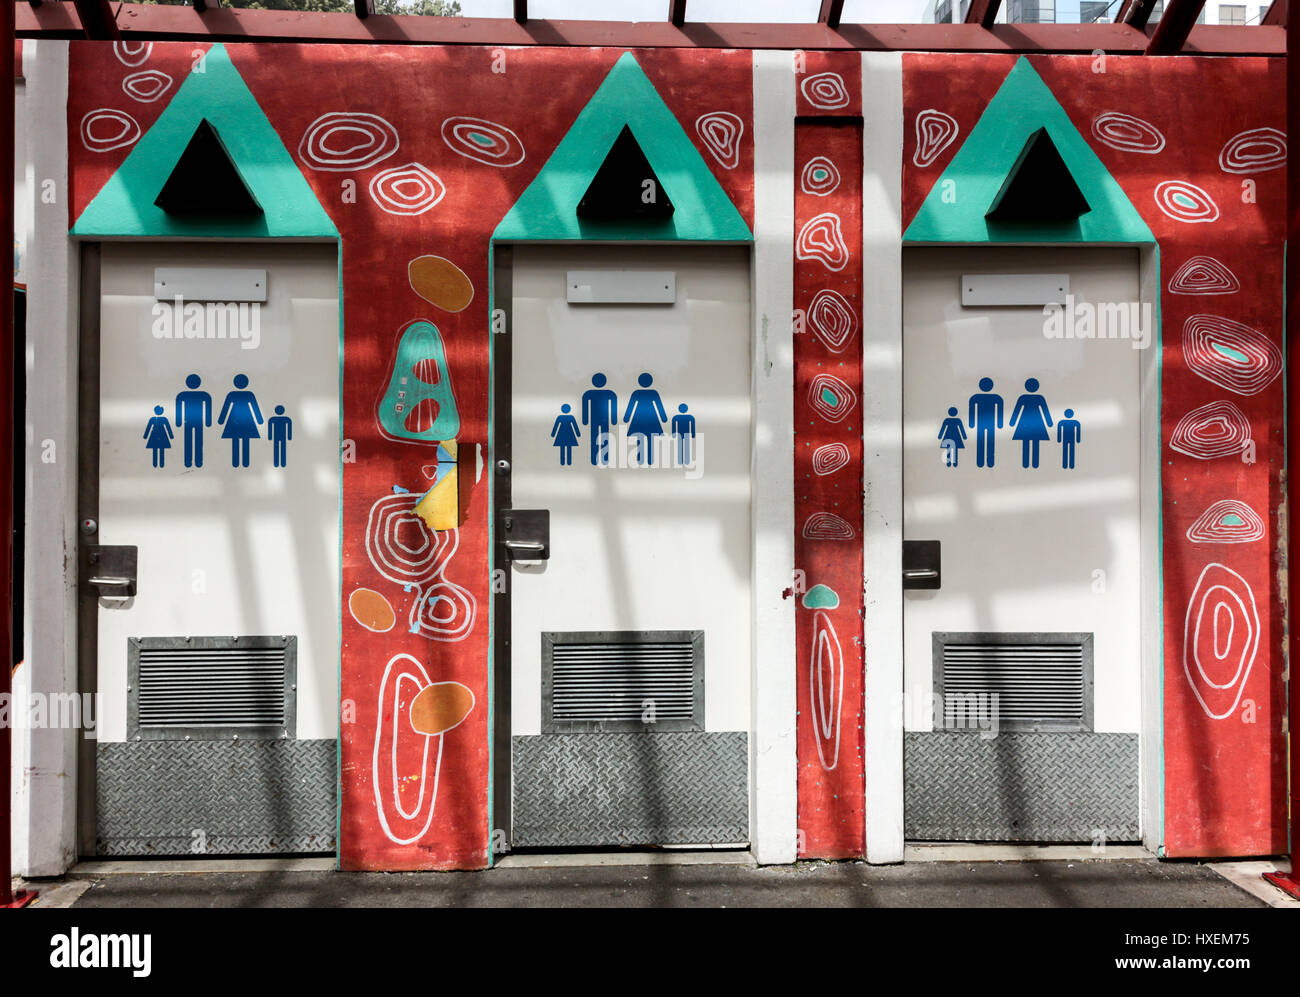 Wellington, New Zealand - 10. Februar 2017: bunt bemalte öffentliche Toiletten auf der Straße in Wellington. Stockfoto